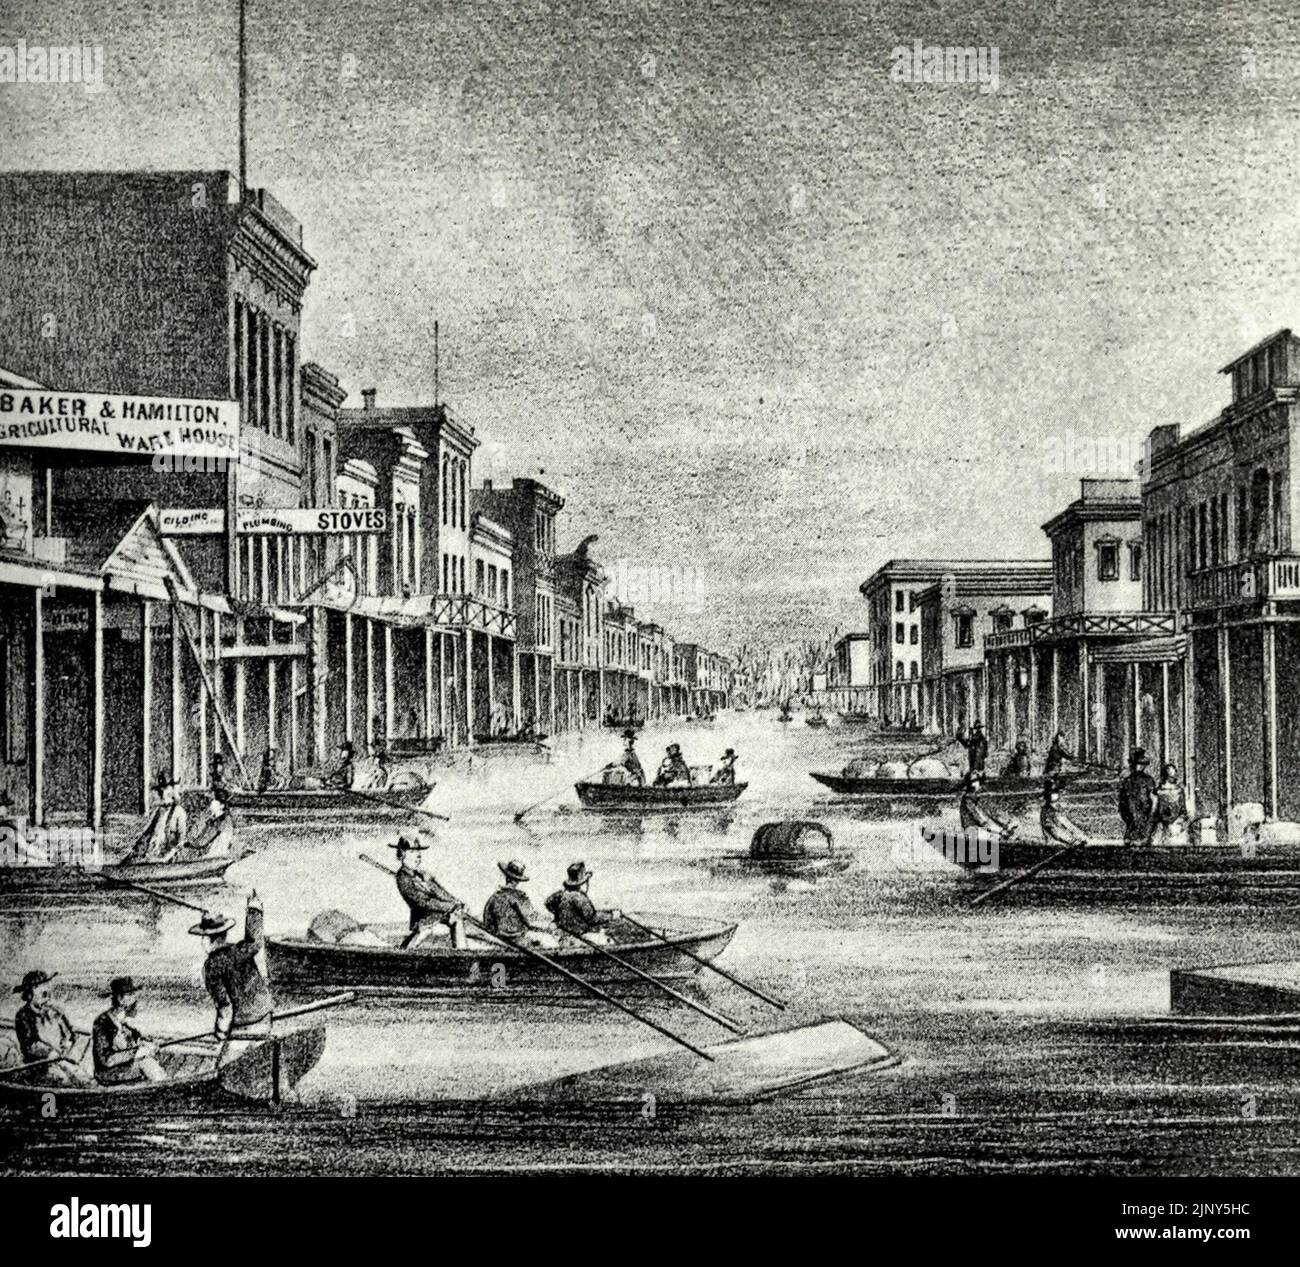 J Street depuis le levee. Sacramento, Californie pendant la grande inondation de 1862 Banque D'Images